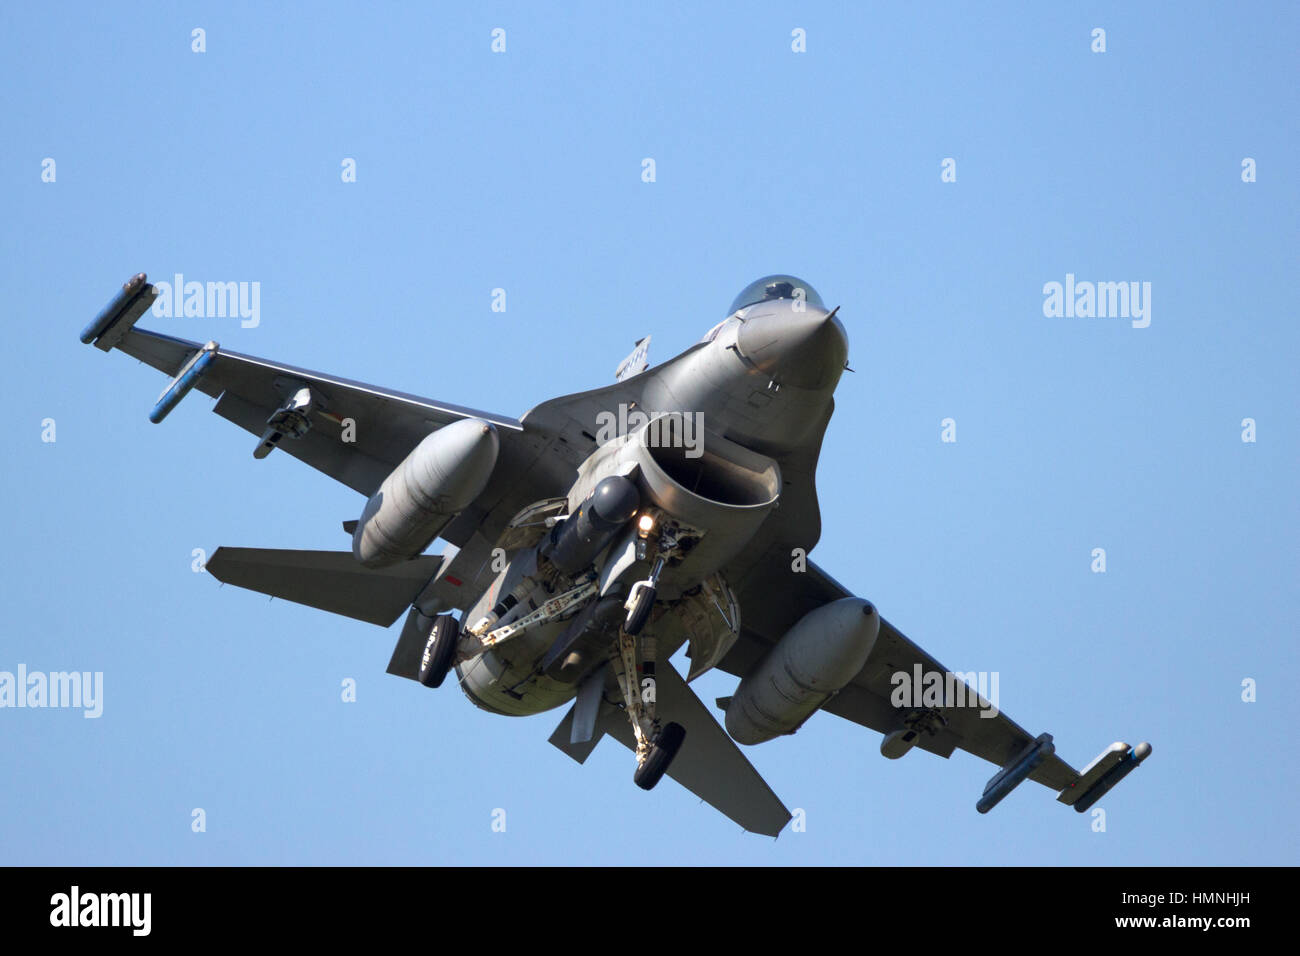 LEEUWARDEN, Pays-Bas - Apr 11, 2016 : Avant de voir une armée de l'air F-16 Fighter jet landing. Banque D'Images